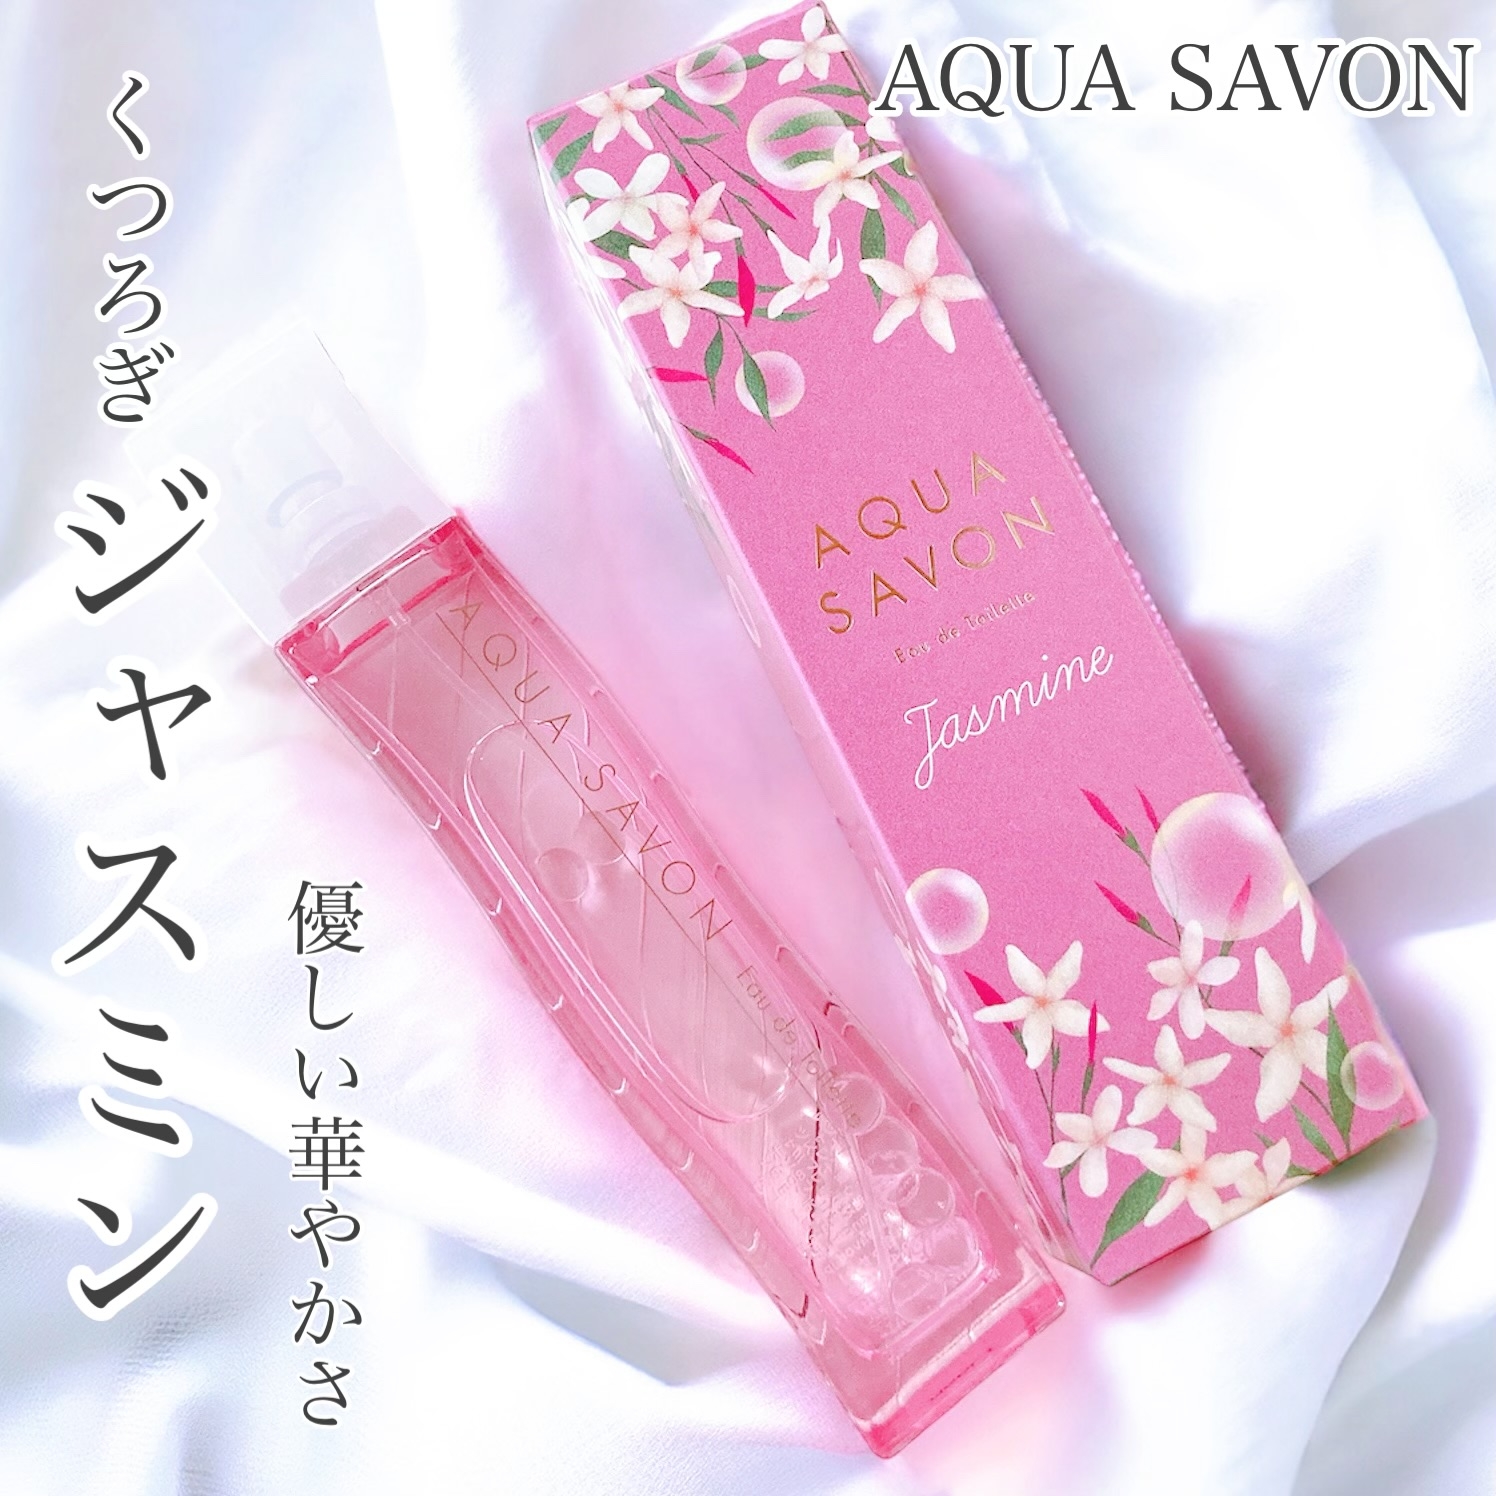 Aqua Savon くつろぎジャスミンの香り オードトワレを使ったおかんさんのクチコミ画像1